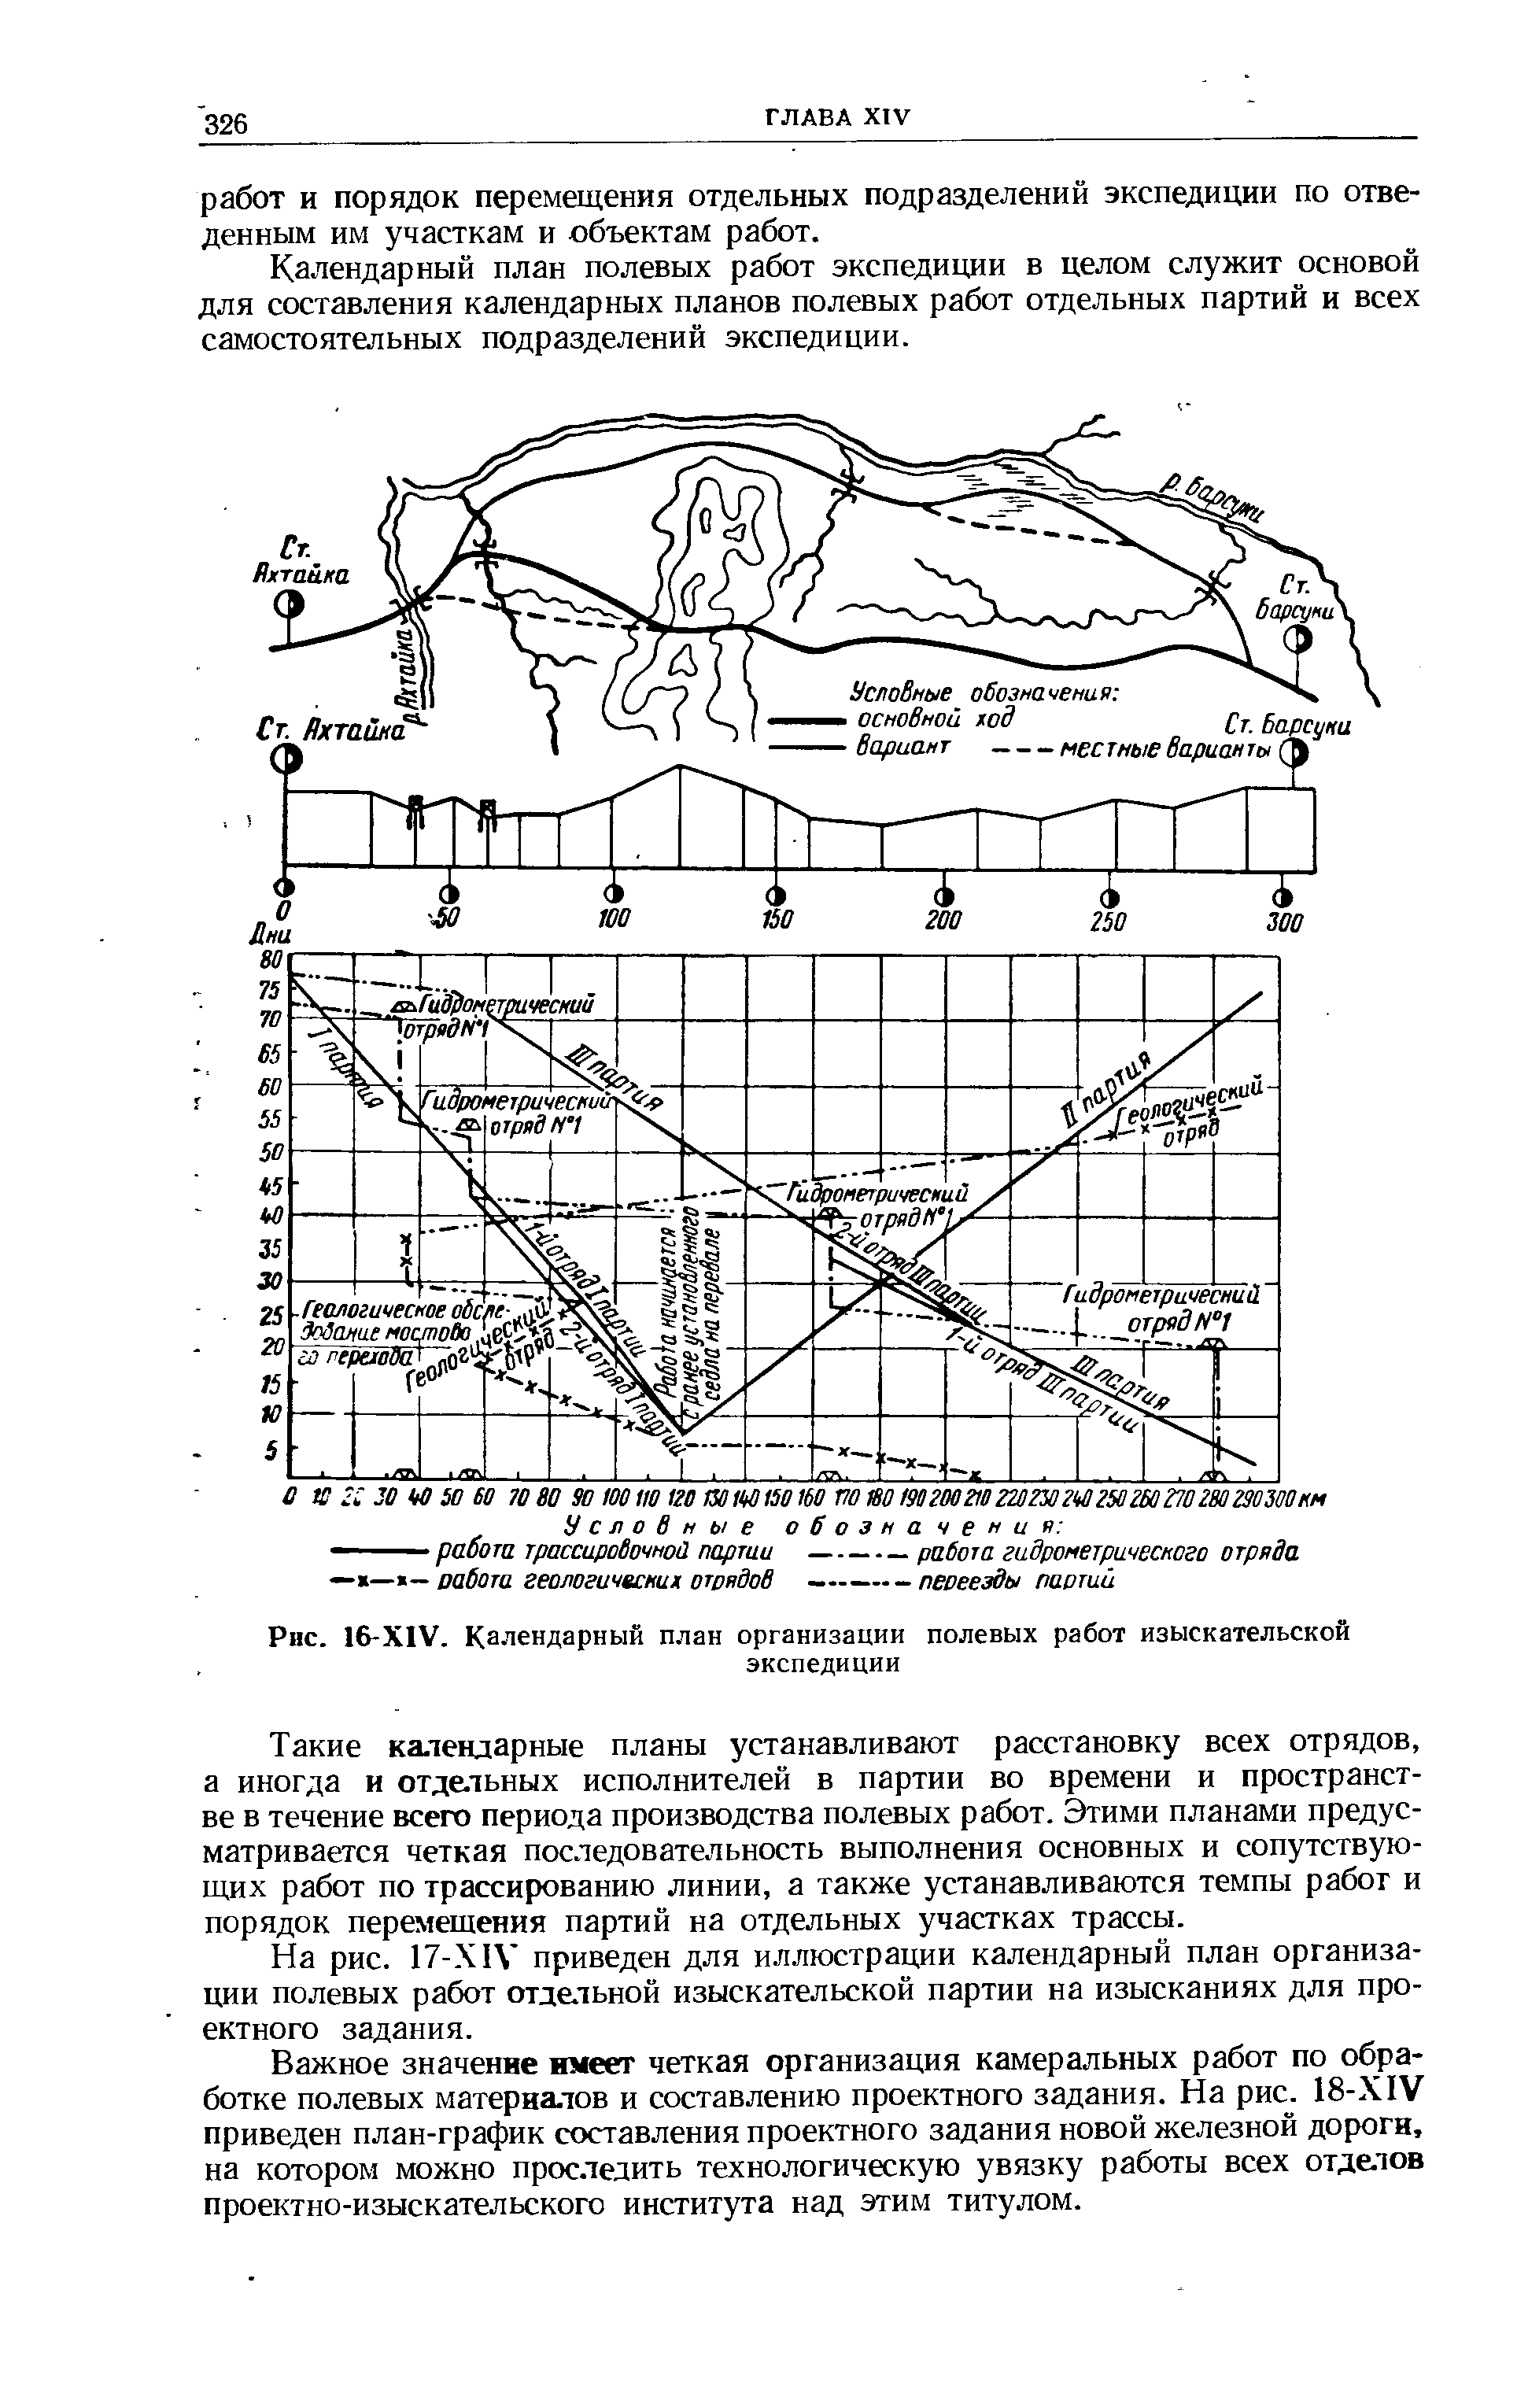 На рис. 17-Х IV приведен для иллюстрации календарный план организации полевых работ отдельной изыскательской партии на изысканиях для проектного задания.
